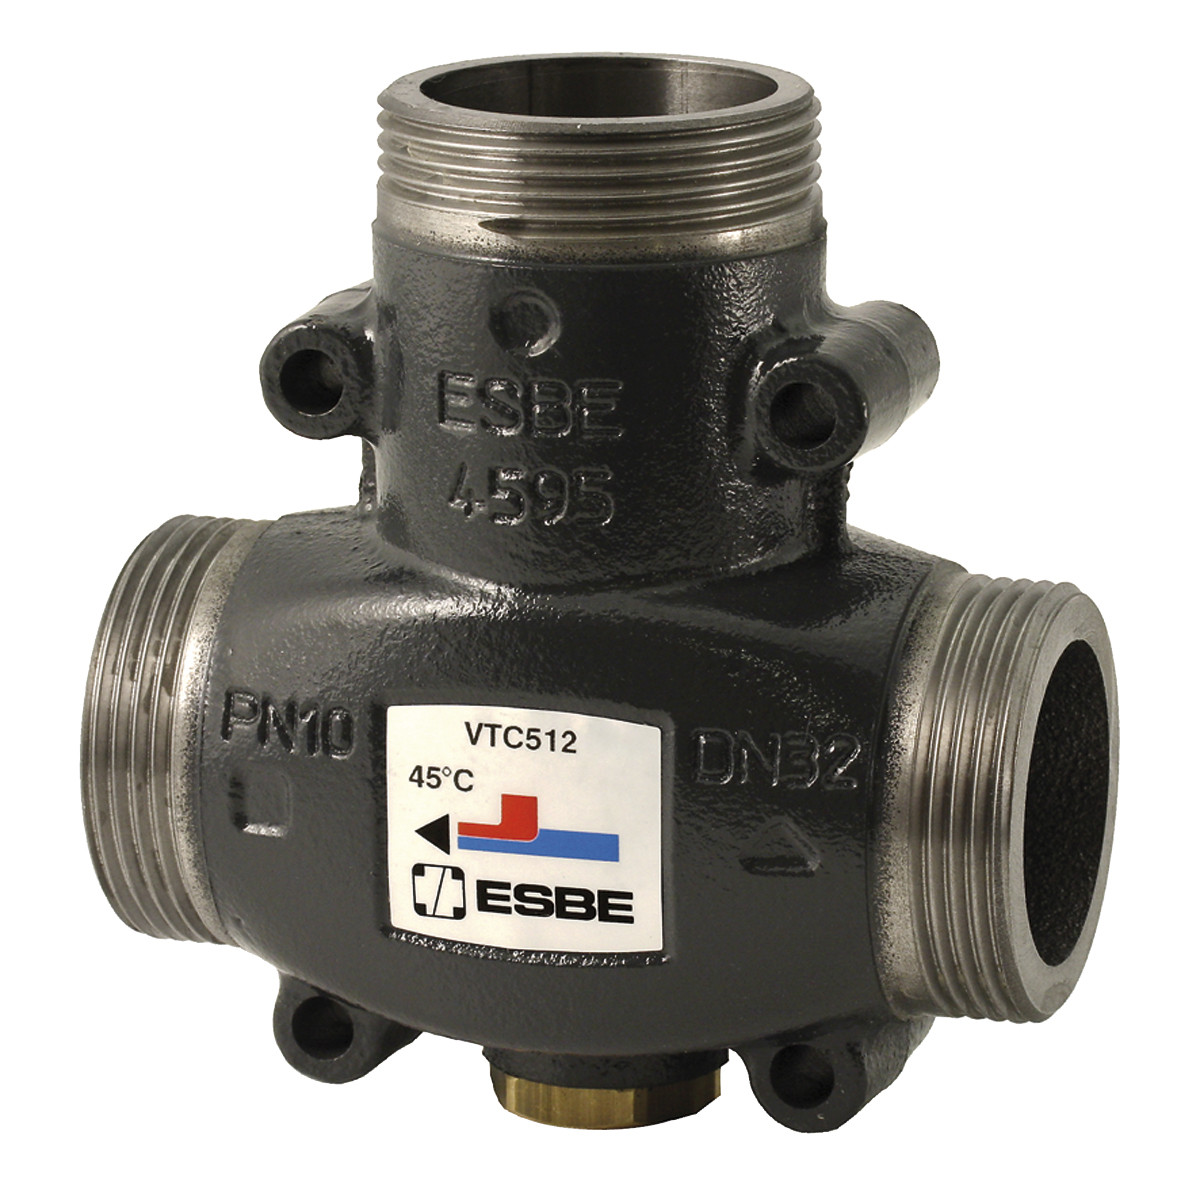 Термостатический смесительный клапан ESBE VTC 512 65°C G 1 1/2" артикул 51022600